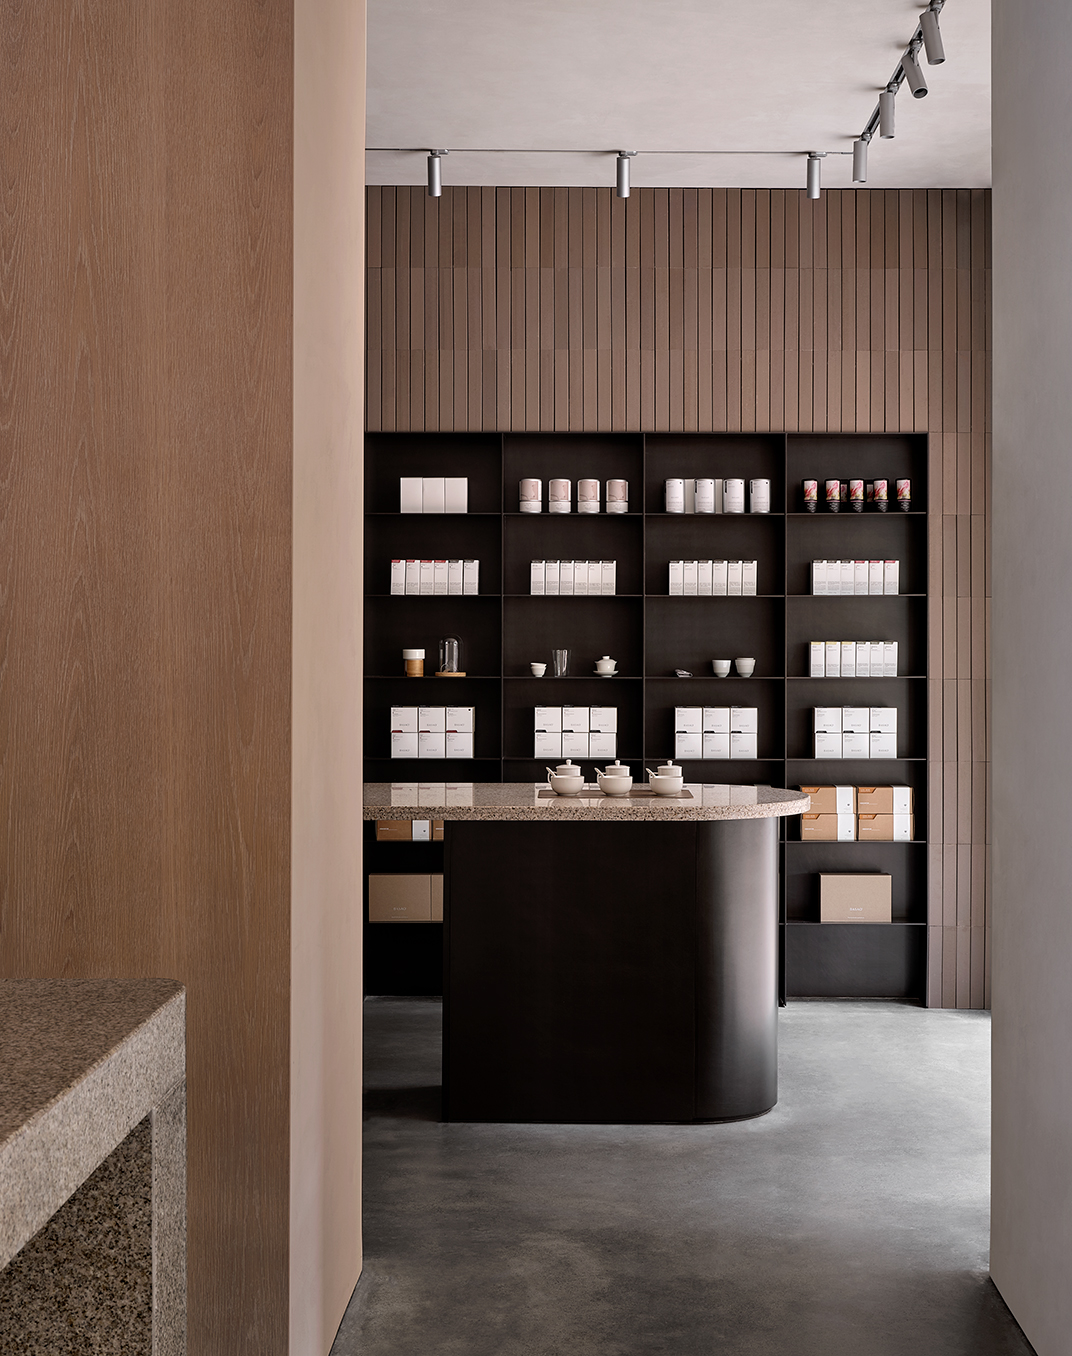 BASAO茶室 厦门 茶室 茶空间 零售 极简主义 水磨石 木饰面 logo设计 vi设计 空间设计